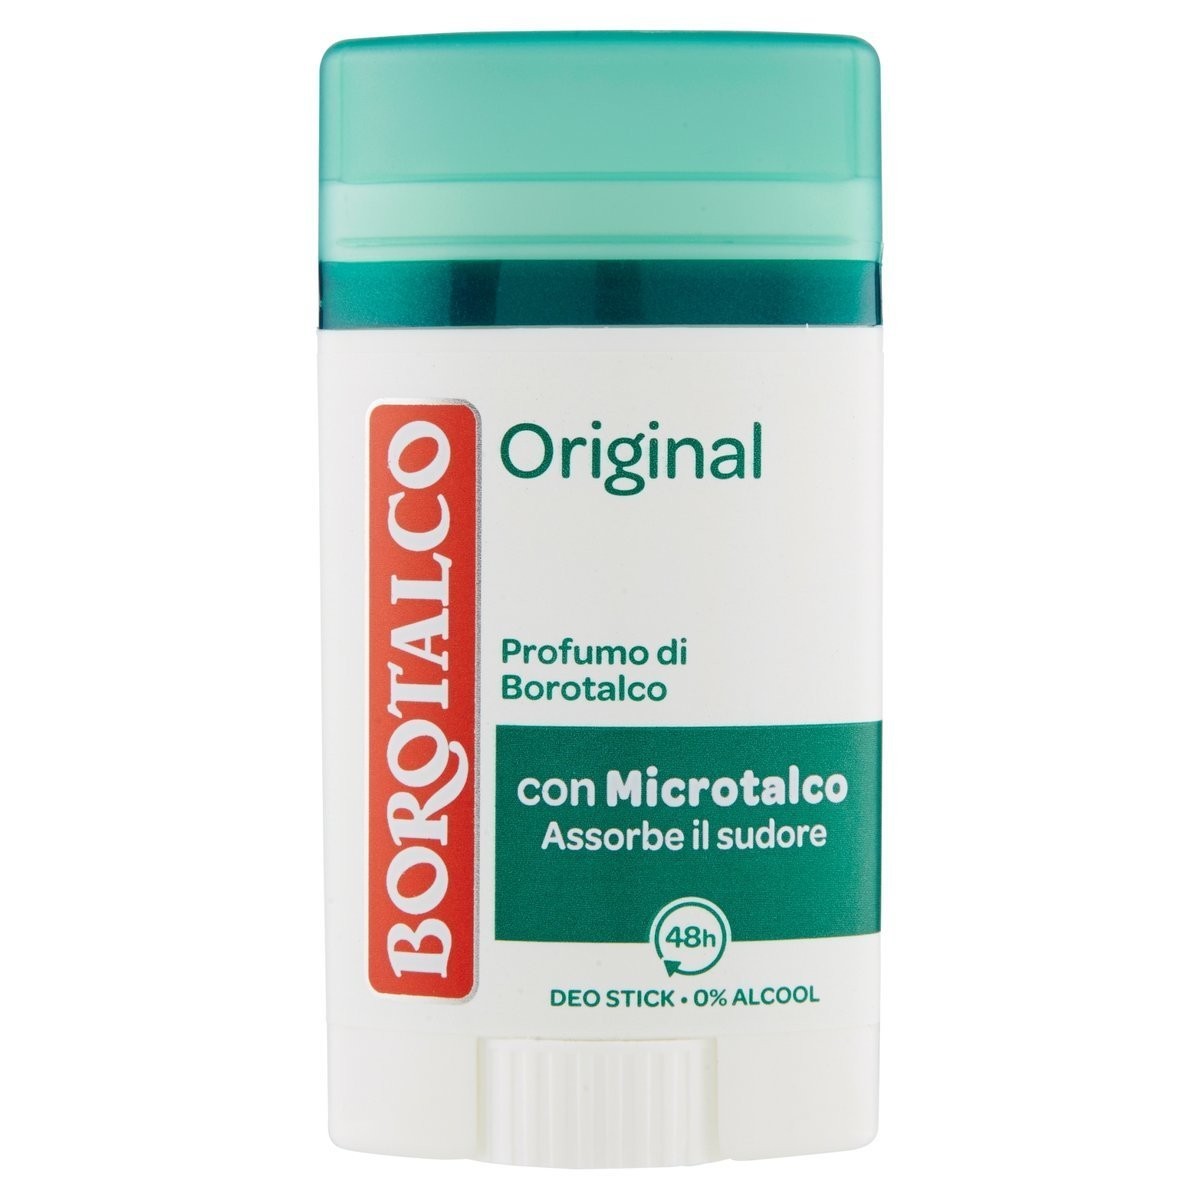 Borotalco Deodorante stick Original